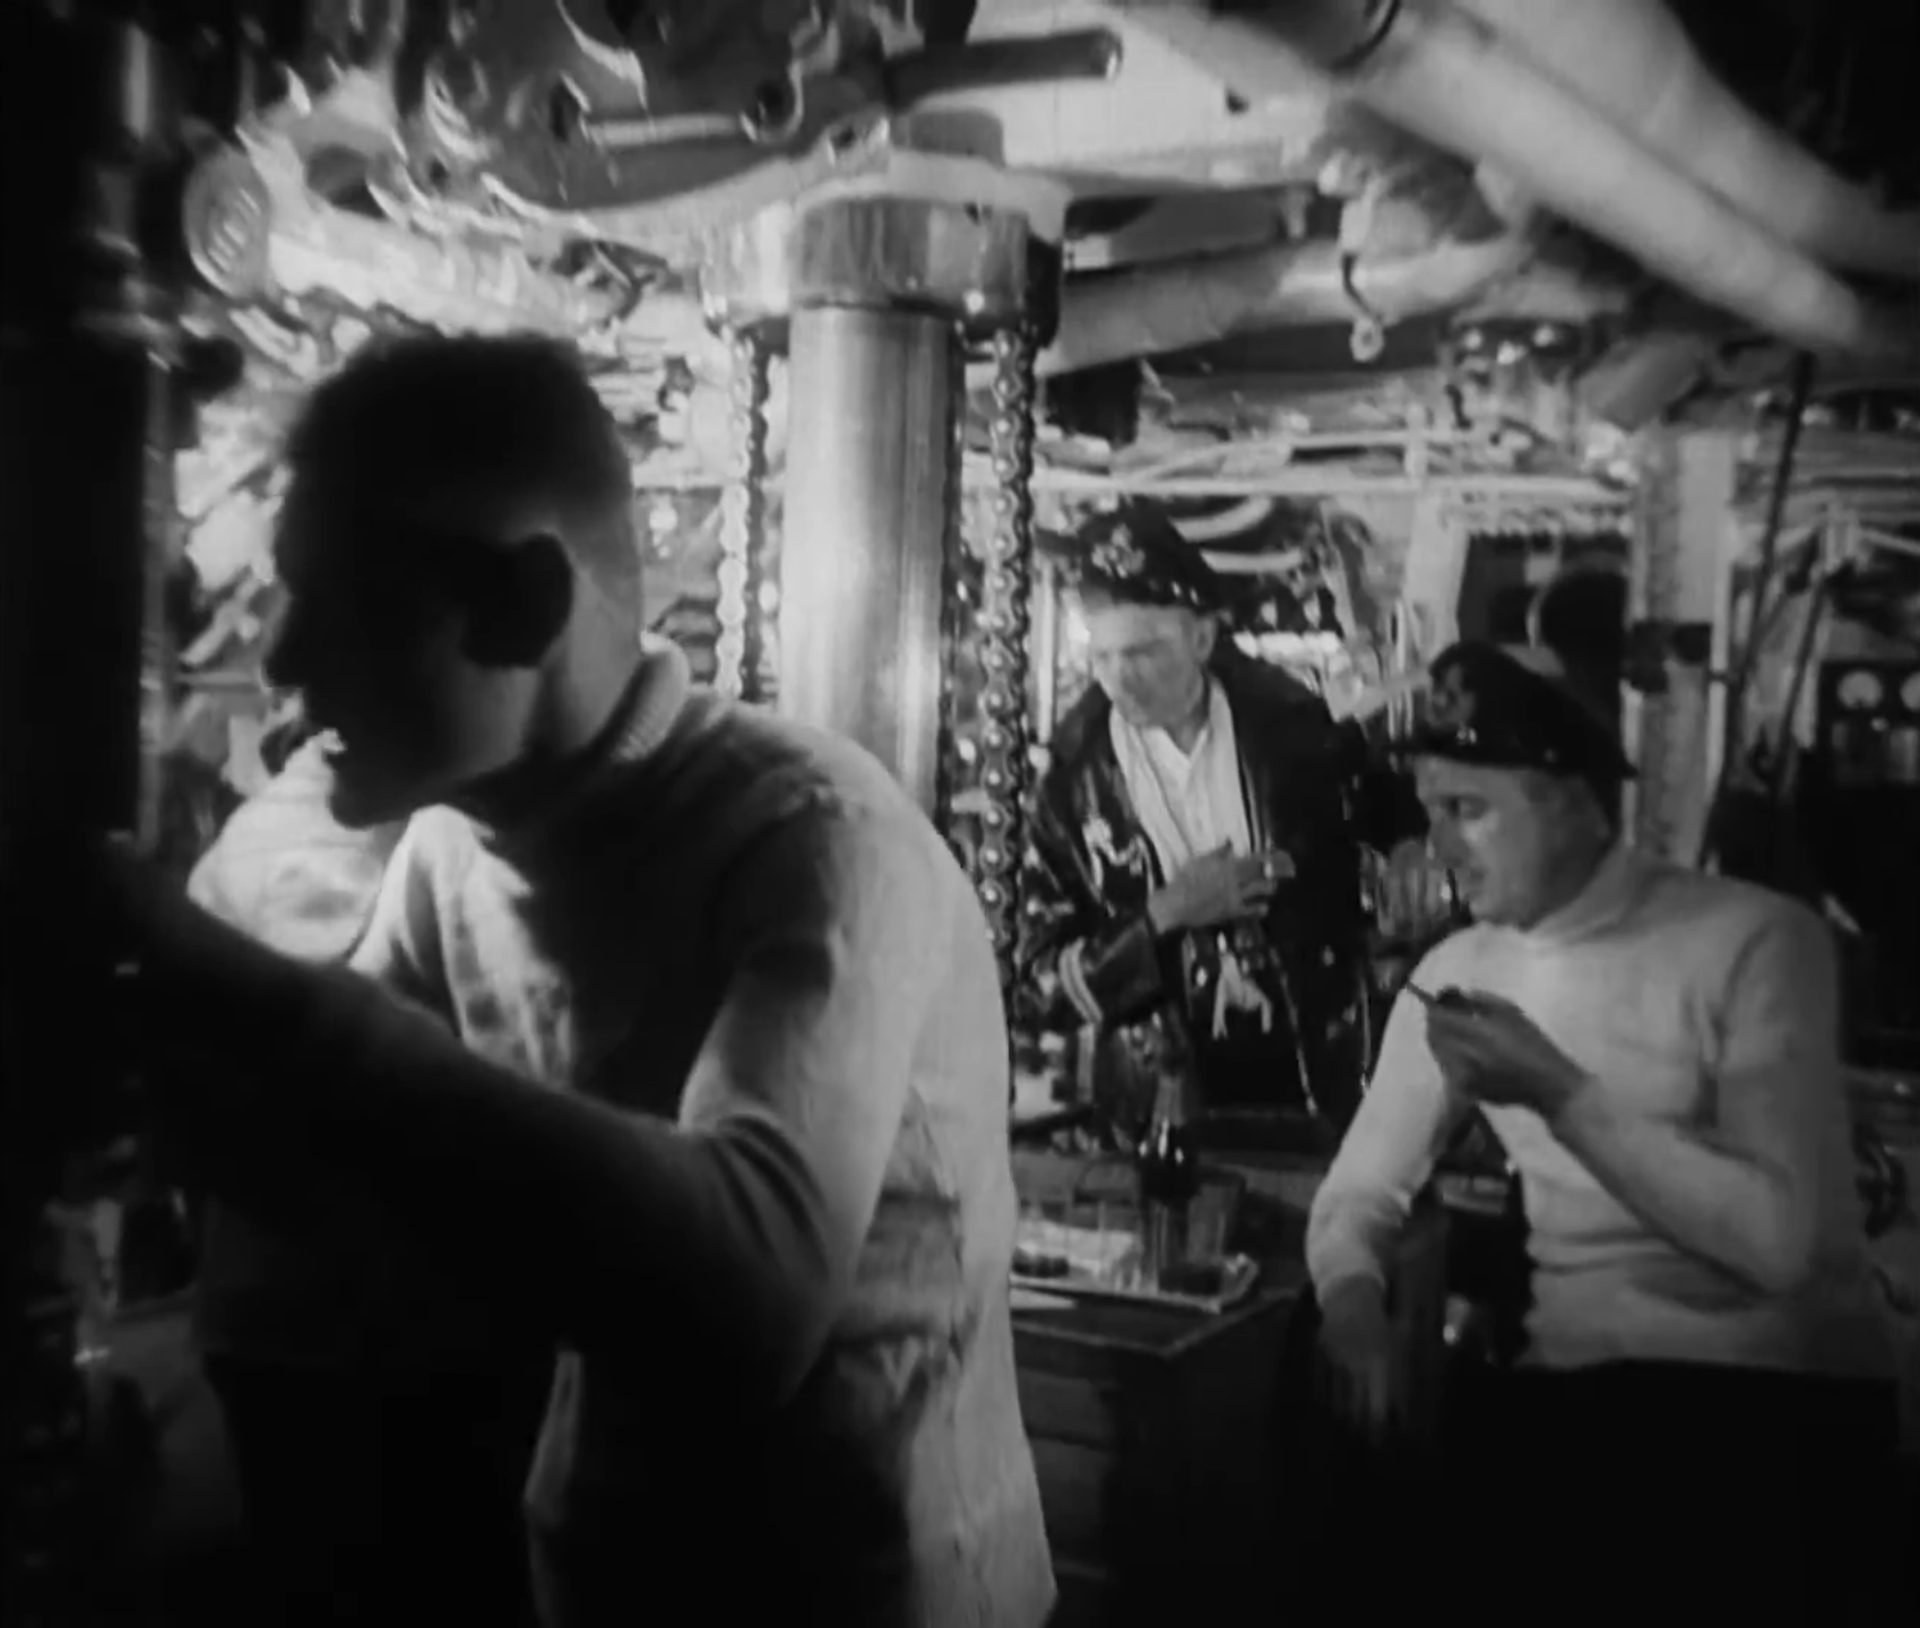 Schwarz-Weiß-Szene in der Kommandozentrale des deutschen U-Bootes; zwei Crewmitglieder und der Kapitän im weißen Rollkragenpullover mit Pfeife.